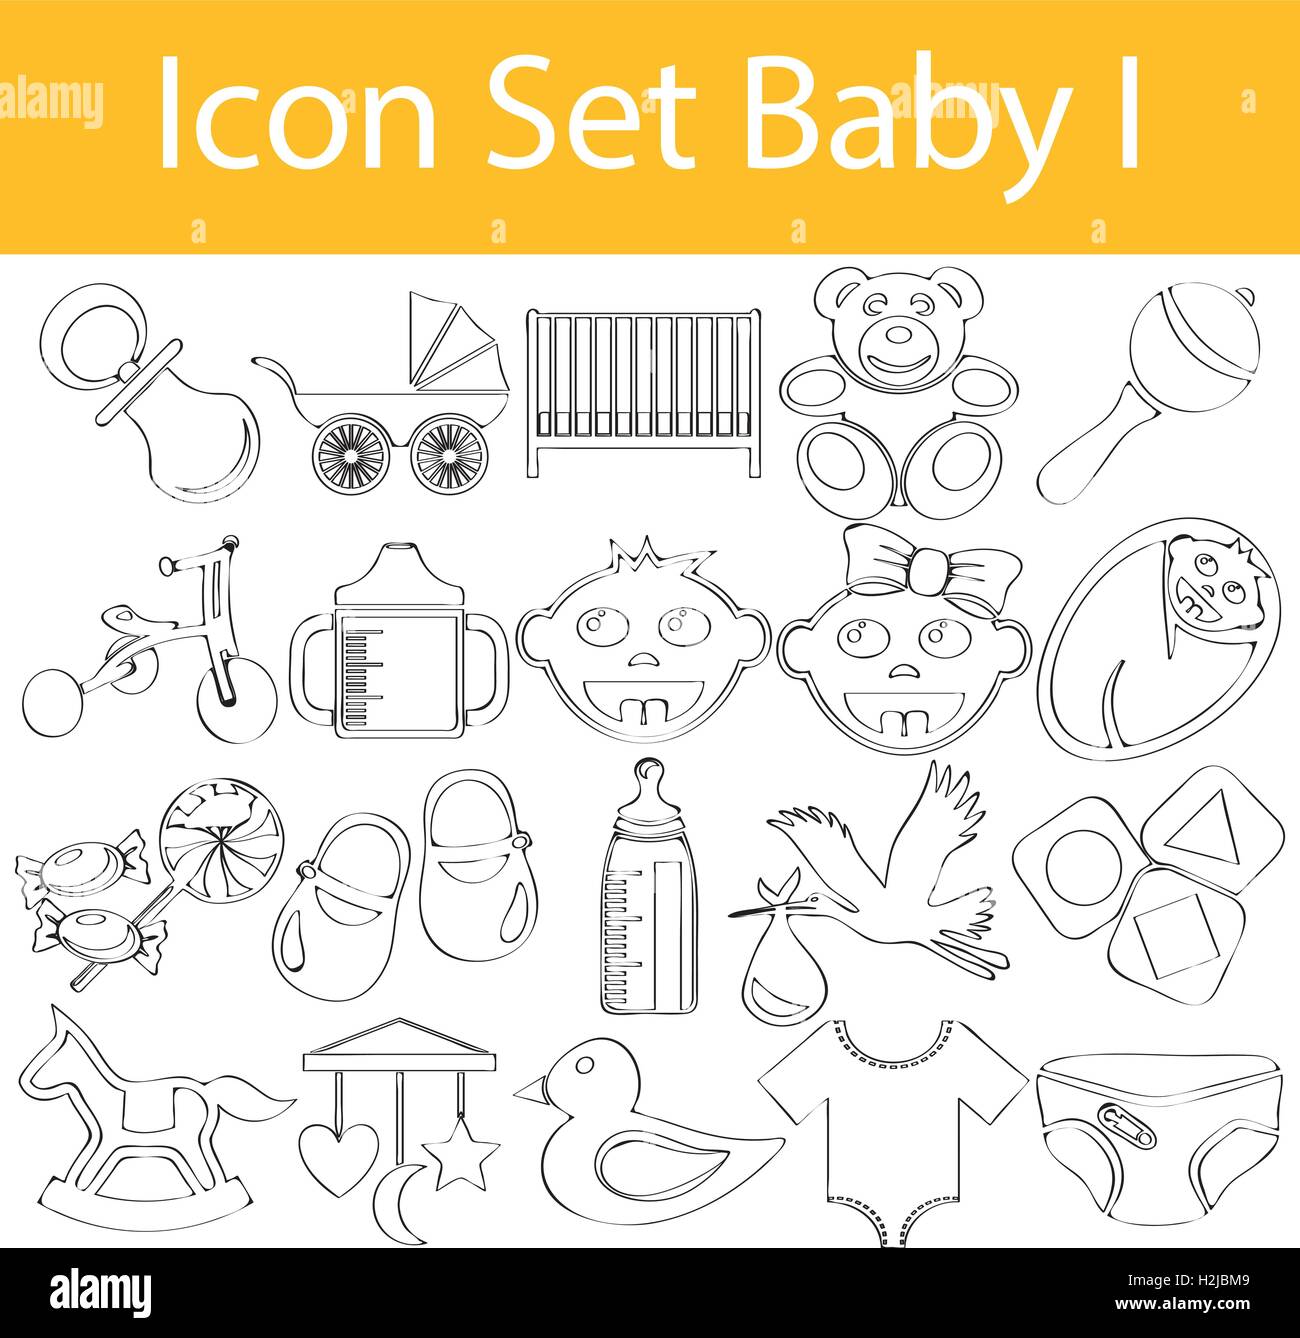 Gezeichnet von Doodle ausgekleidet Icon Set Baby mit 20 Icons für den kreativen Einsatz in Grafik-design Stock Vektor